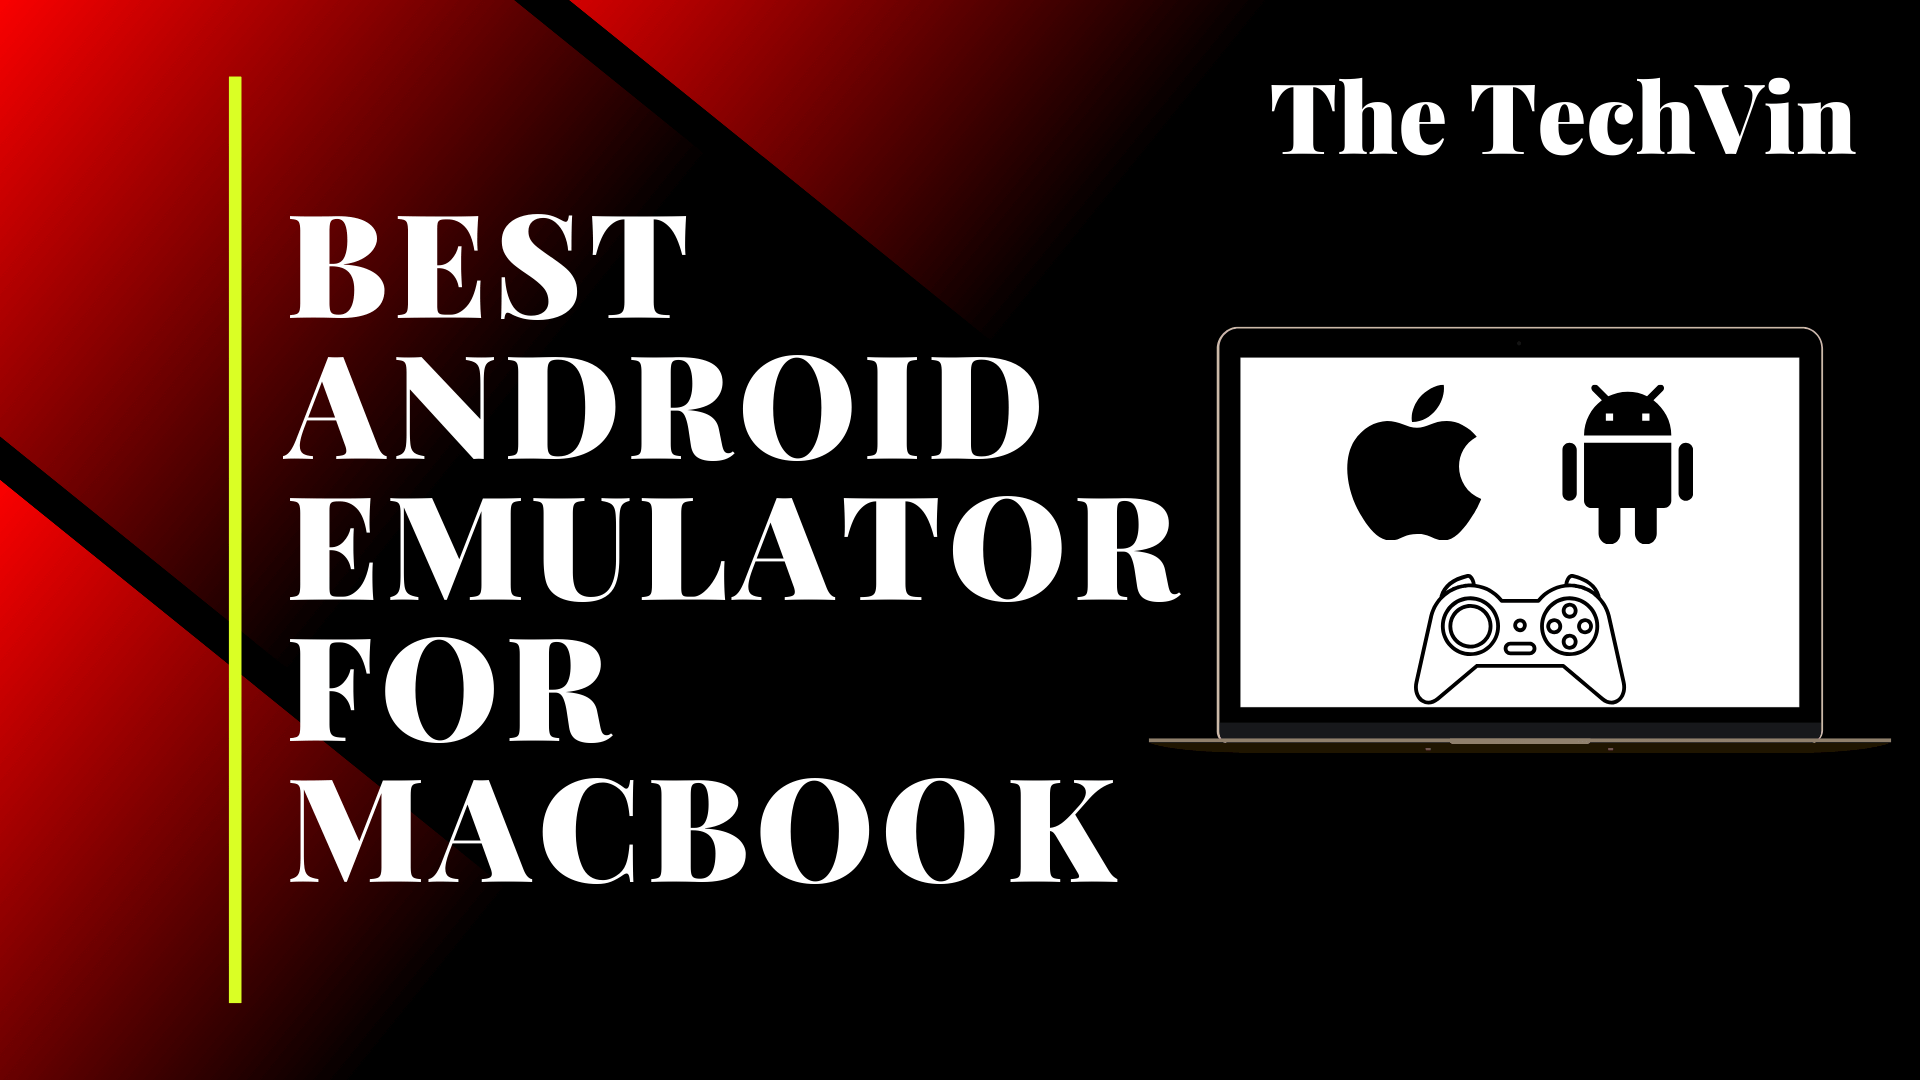 andrioid emulator on mac 2017